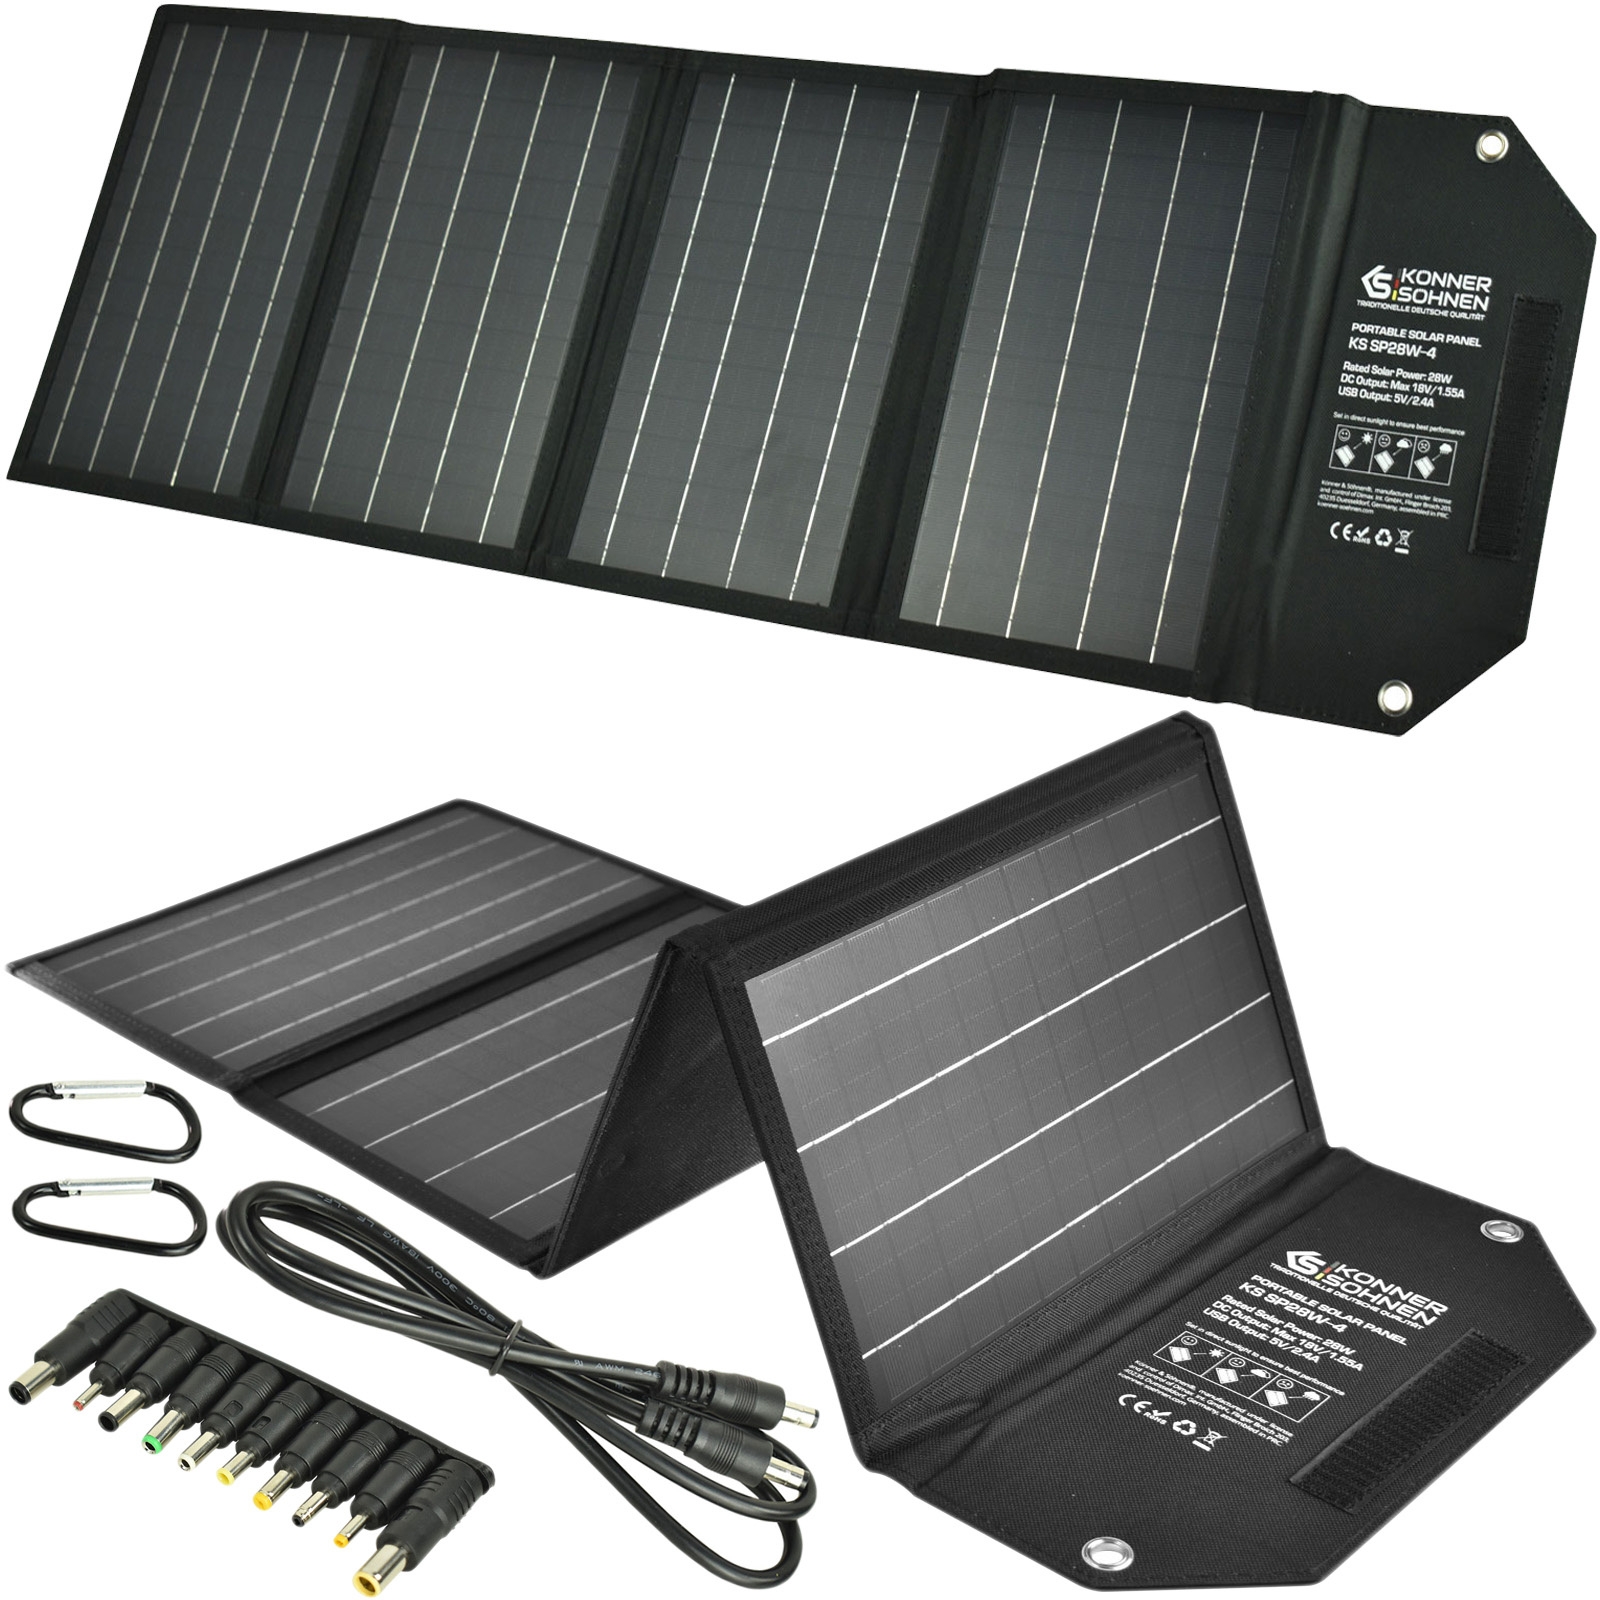 Image of Przenośny panel solarny travel 28W KS SP28W-4 USB składany Könner&Söhnen KS